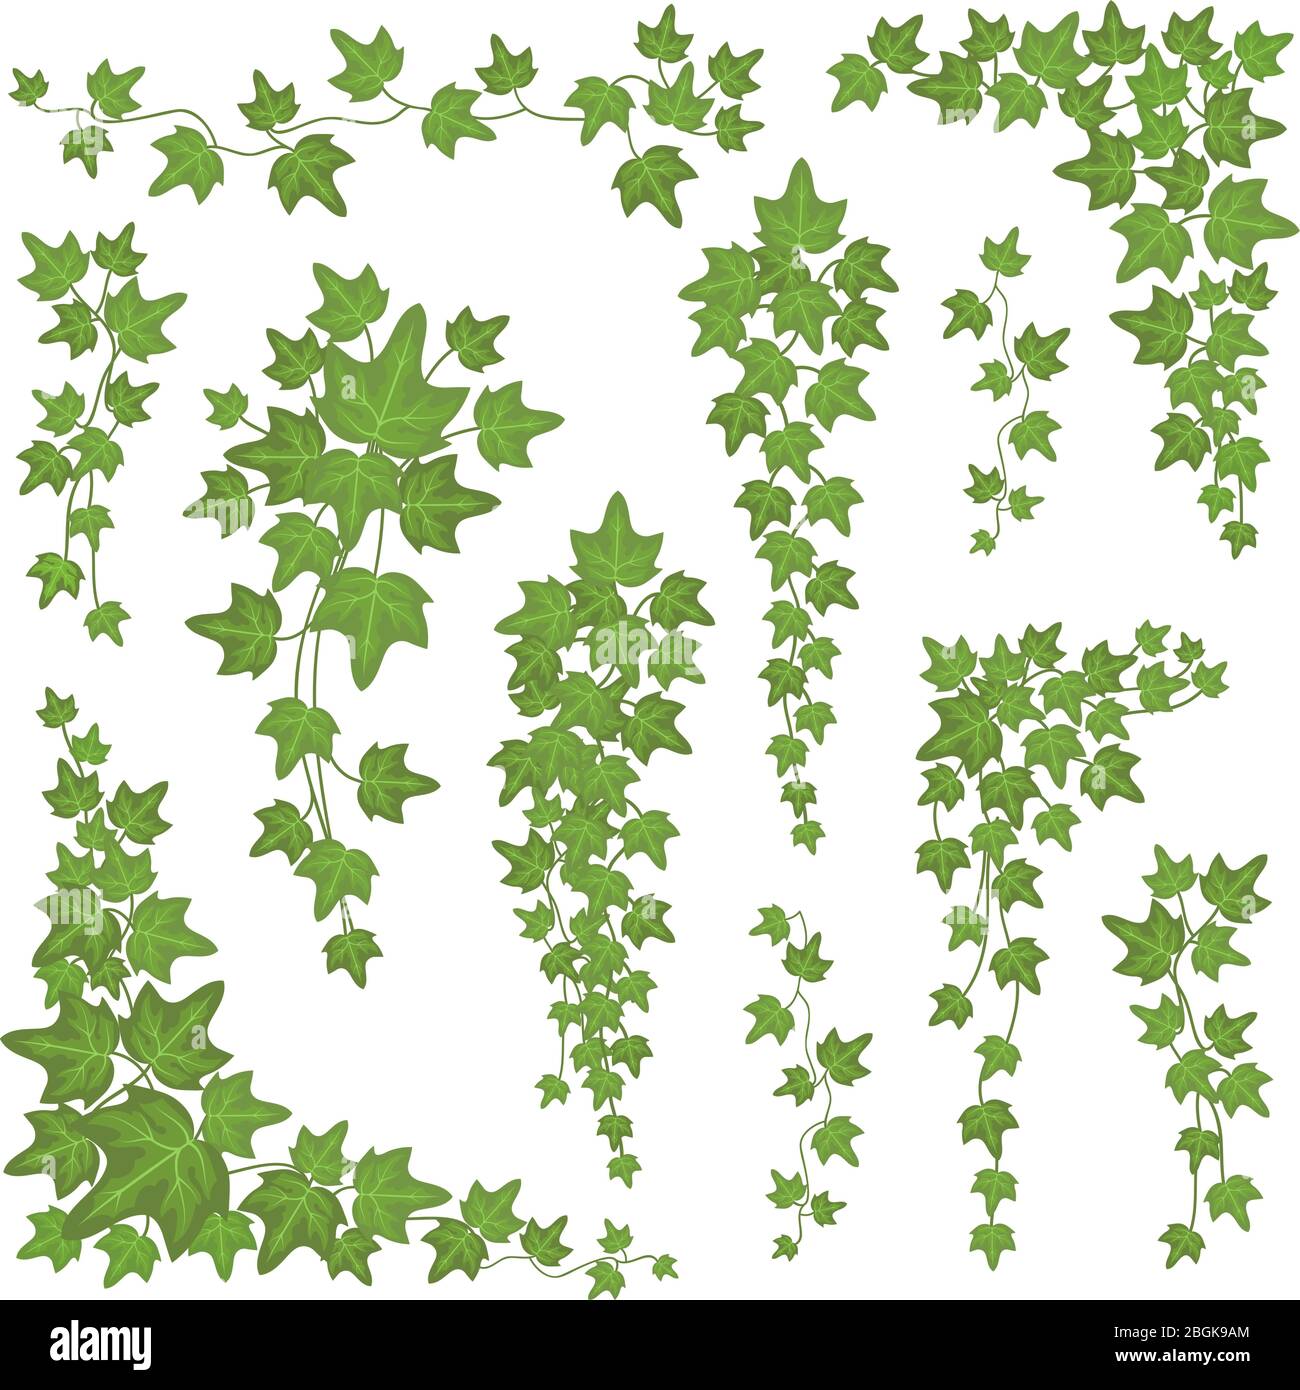 Efeu grüne Blätter an hängenden Ästen. Wand klettern Dekoration Pflanze Vektor-Set isoliert auf weißem Hintergrund. Pflanzenblatt Natur für Dekoration, Blattwerk Stock Vektor